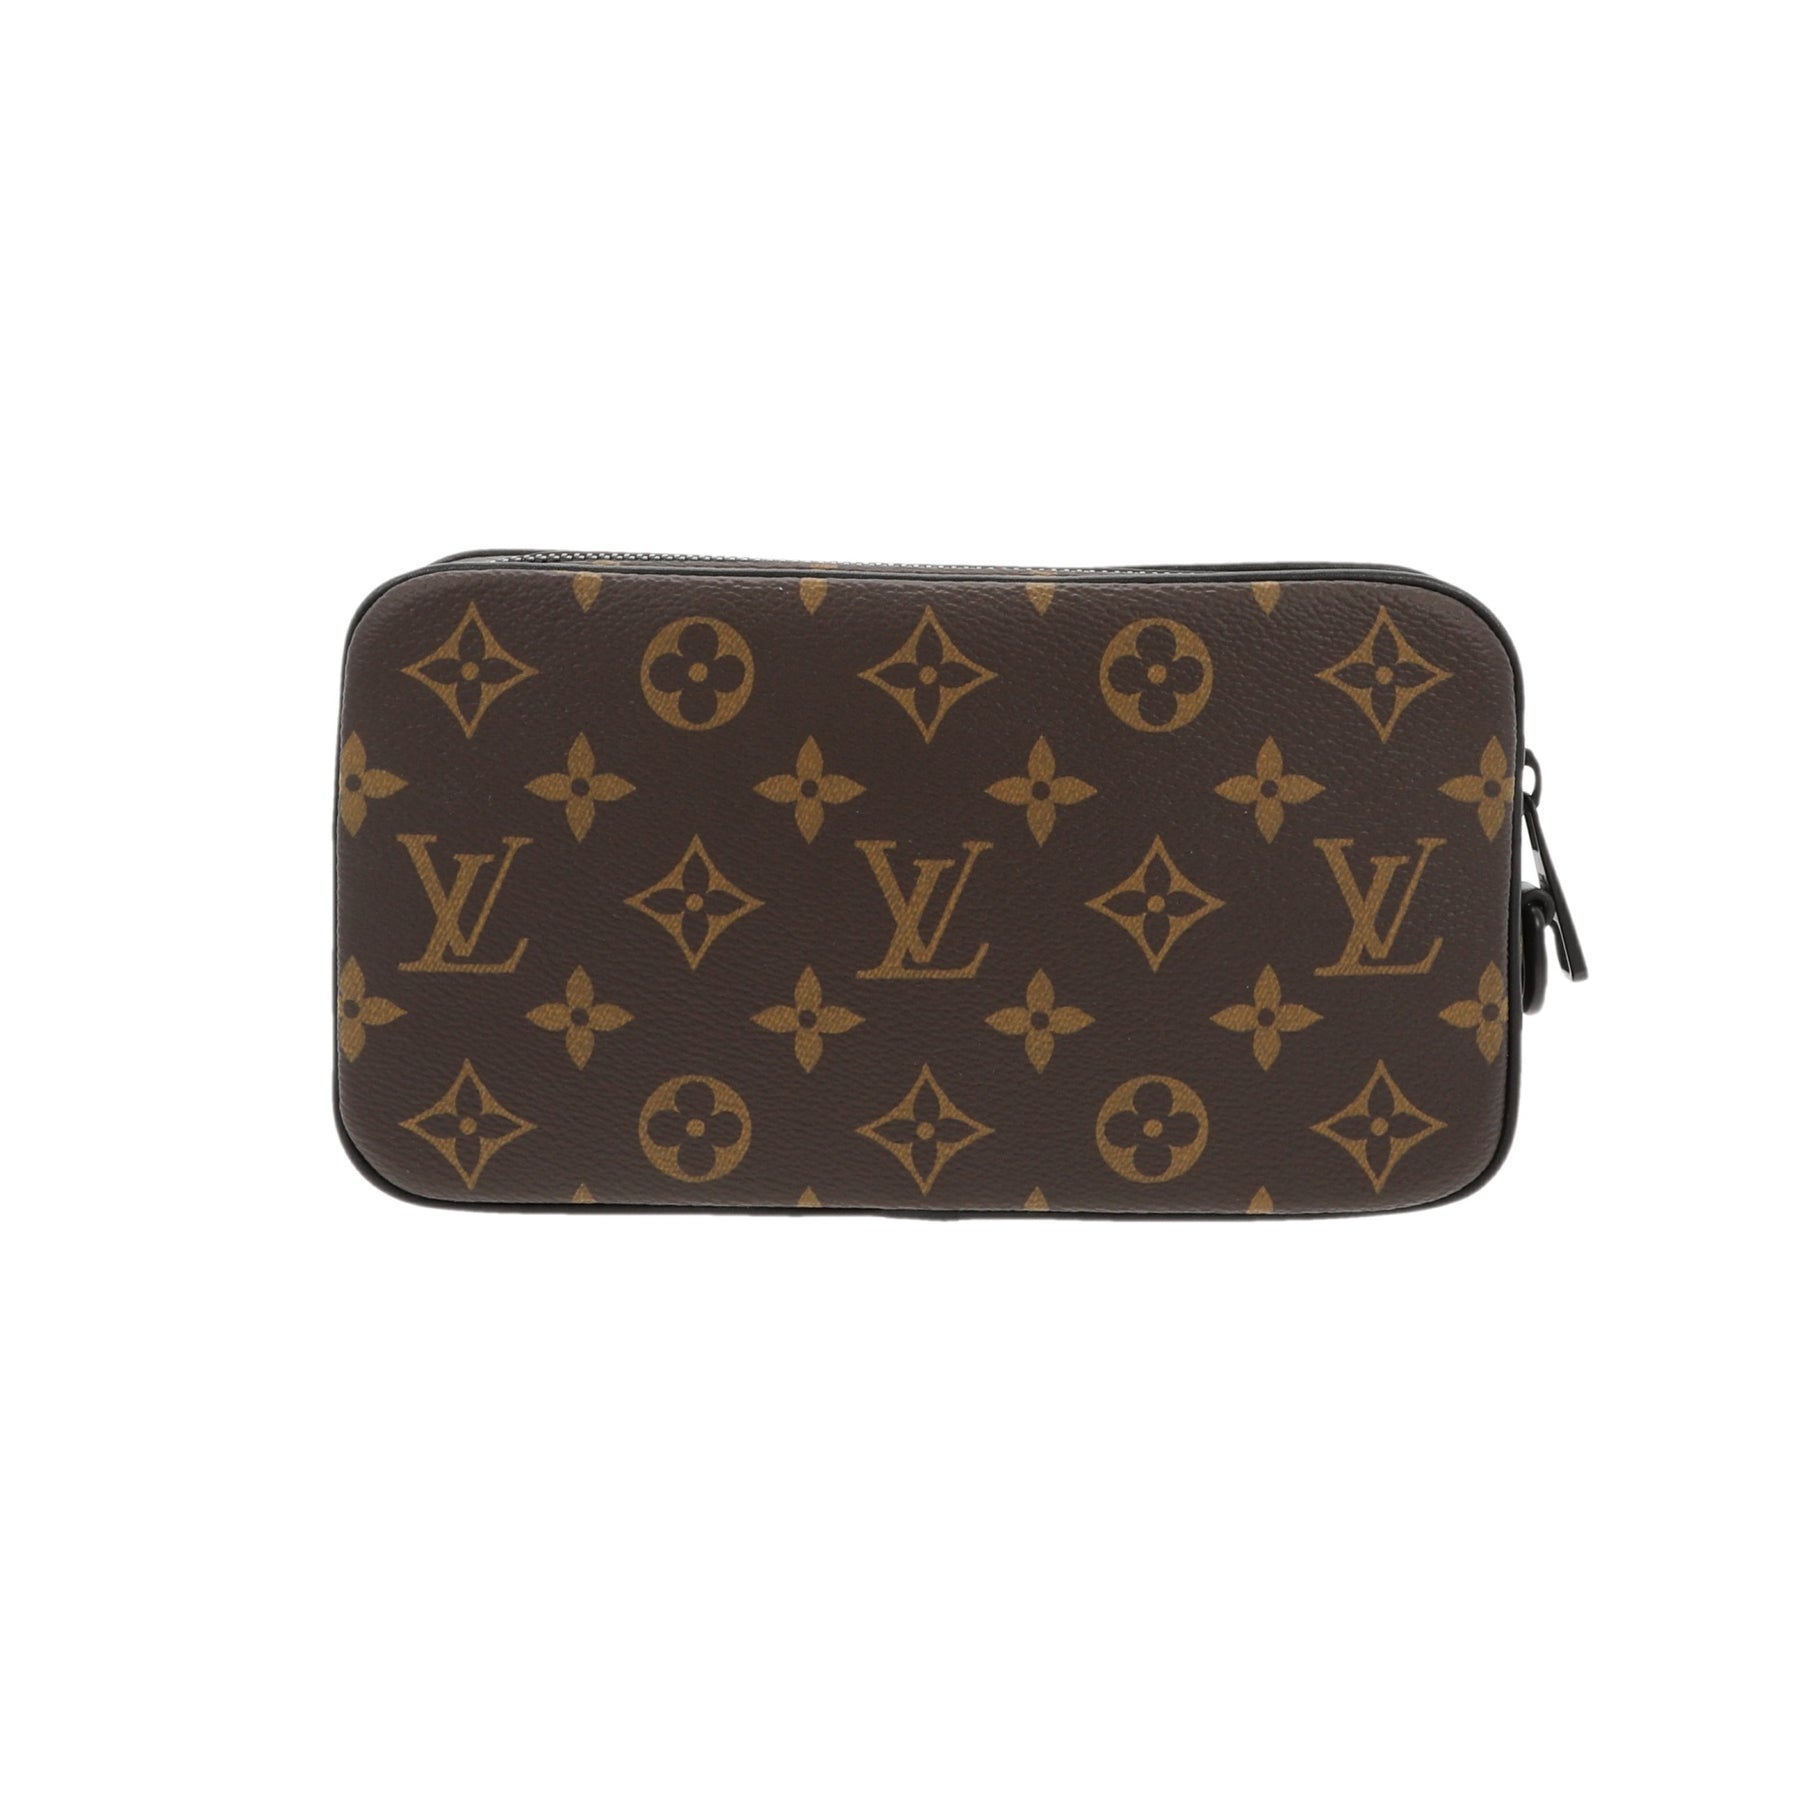 Louis Vuitton Virgil Abloh Pochette Volga Handbag